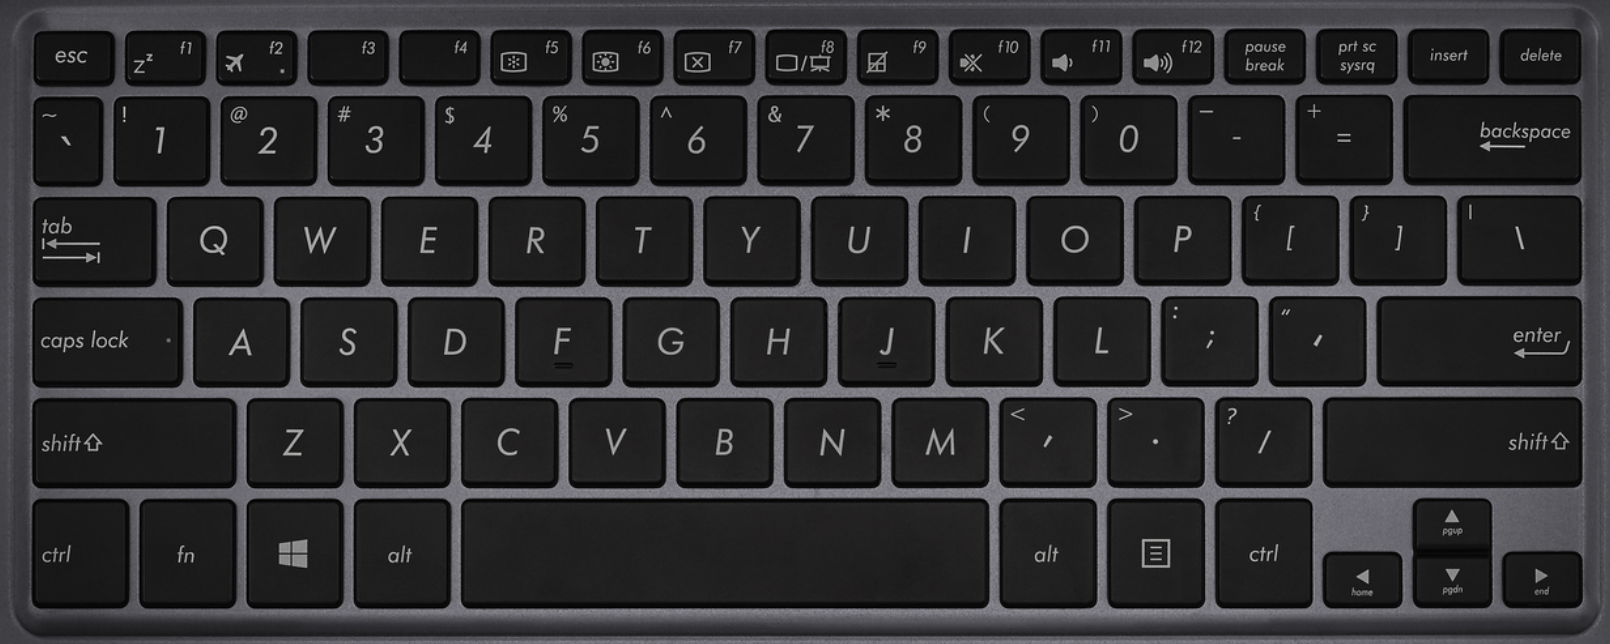 asus-zenbook-UX360C-replacement-laptop-keyboard-key.jpg